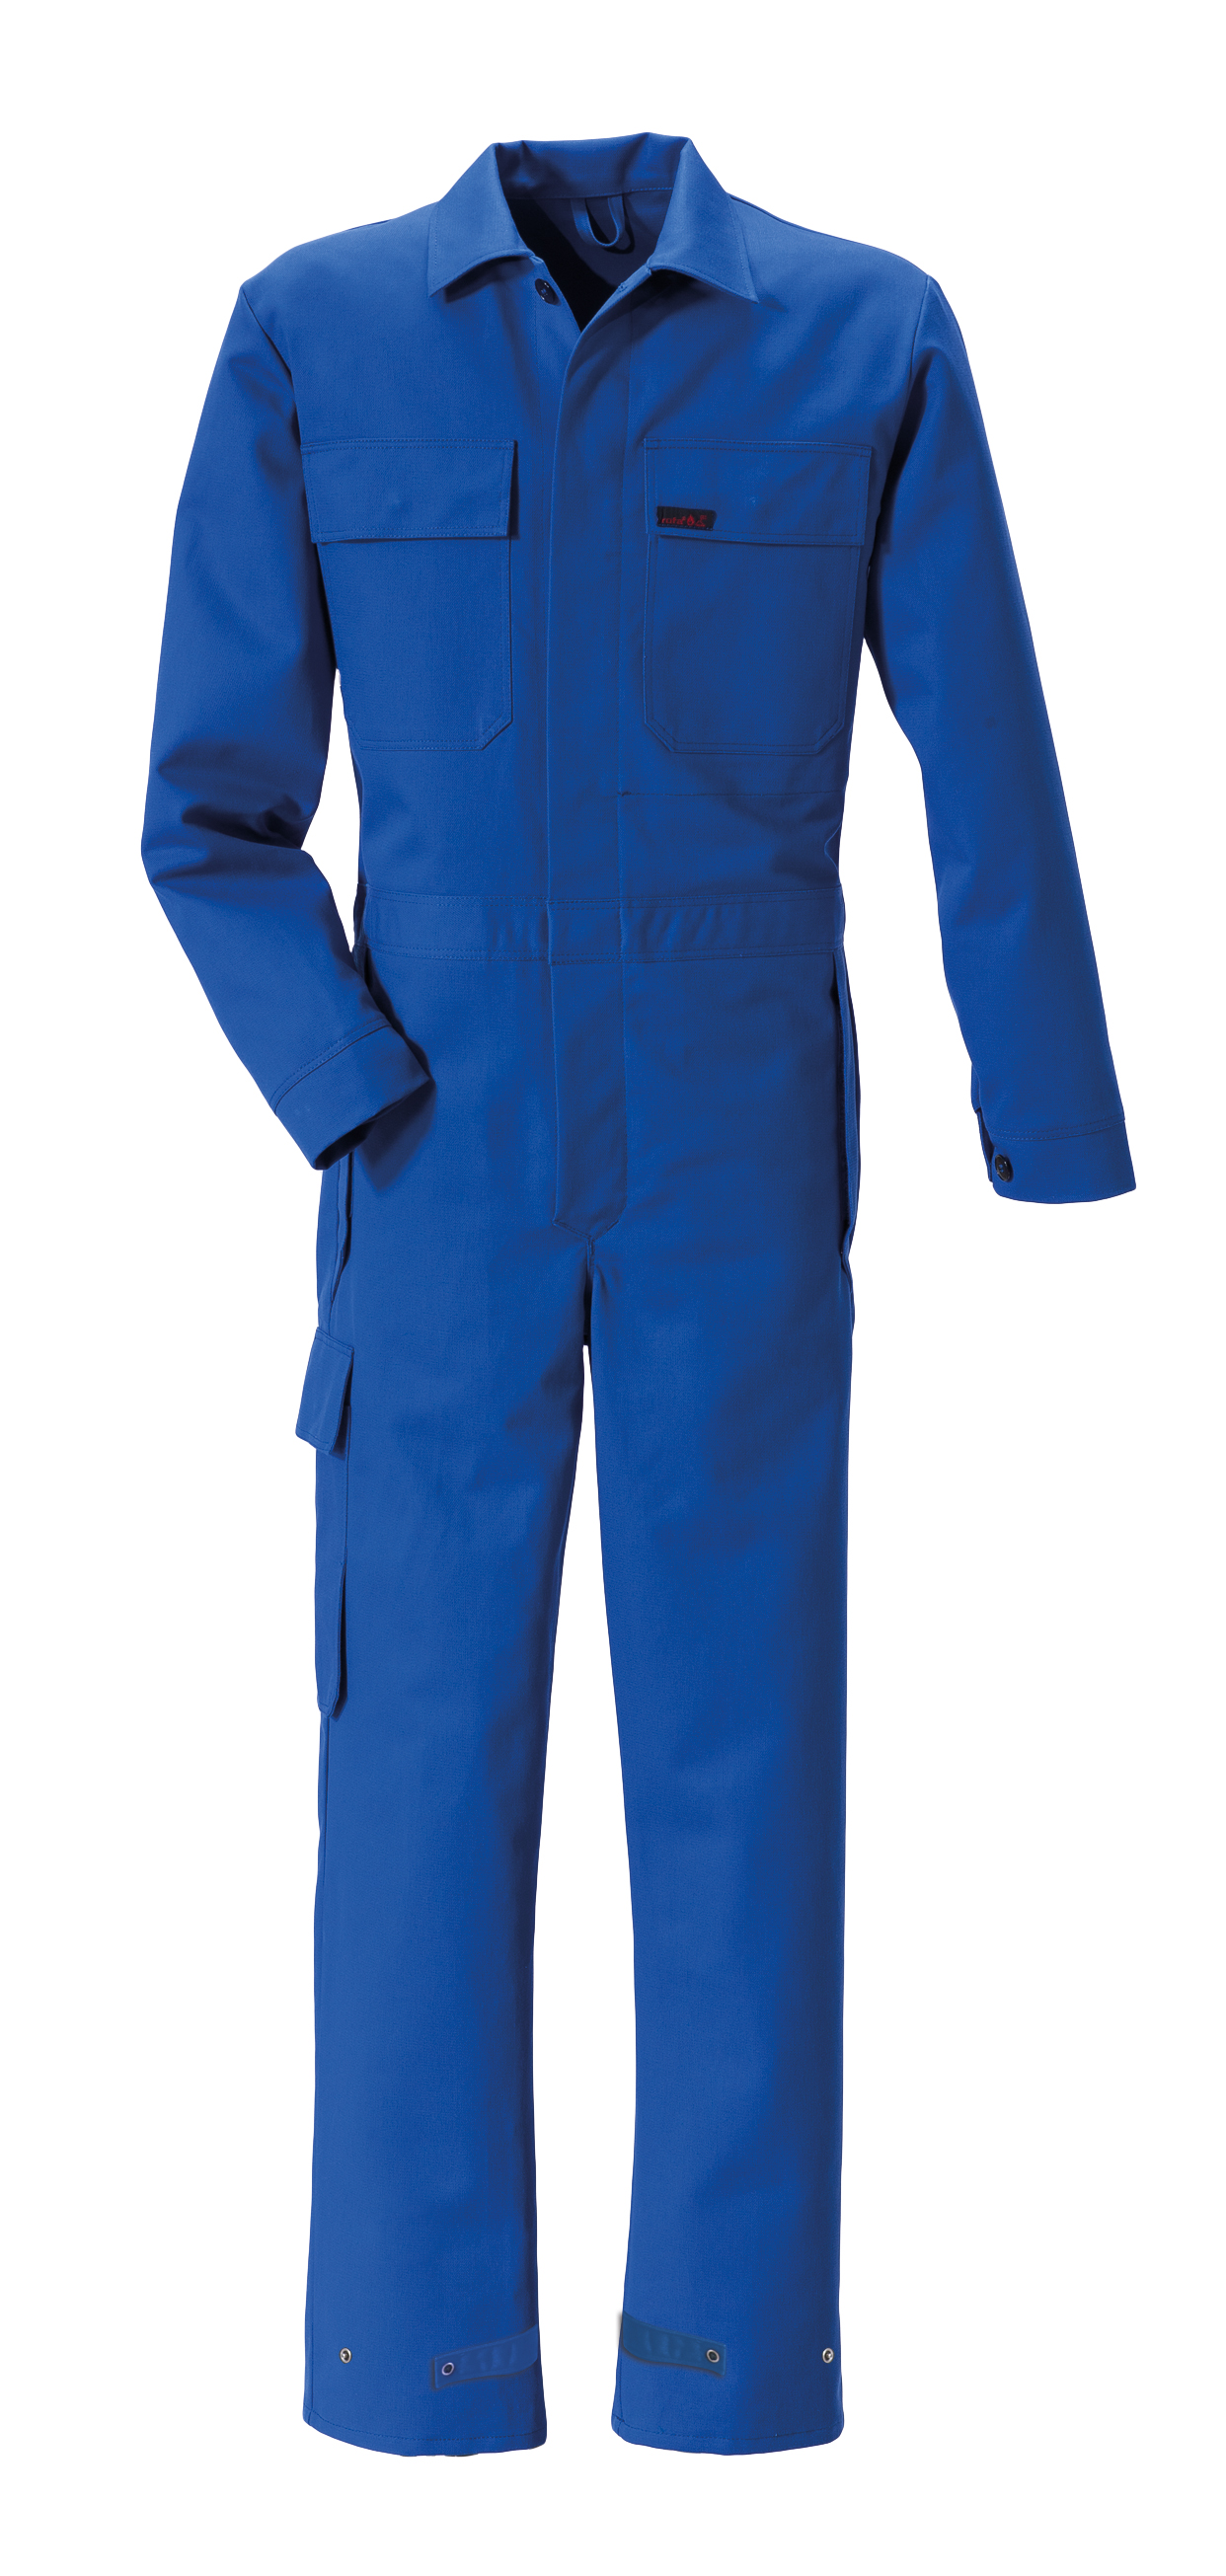 ROFA Schweißerschutzombination Schweißerkleidung Proban kornblau ca 330 g